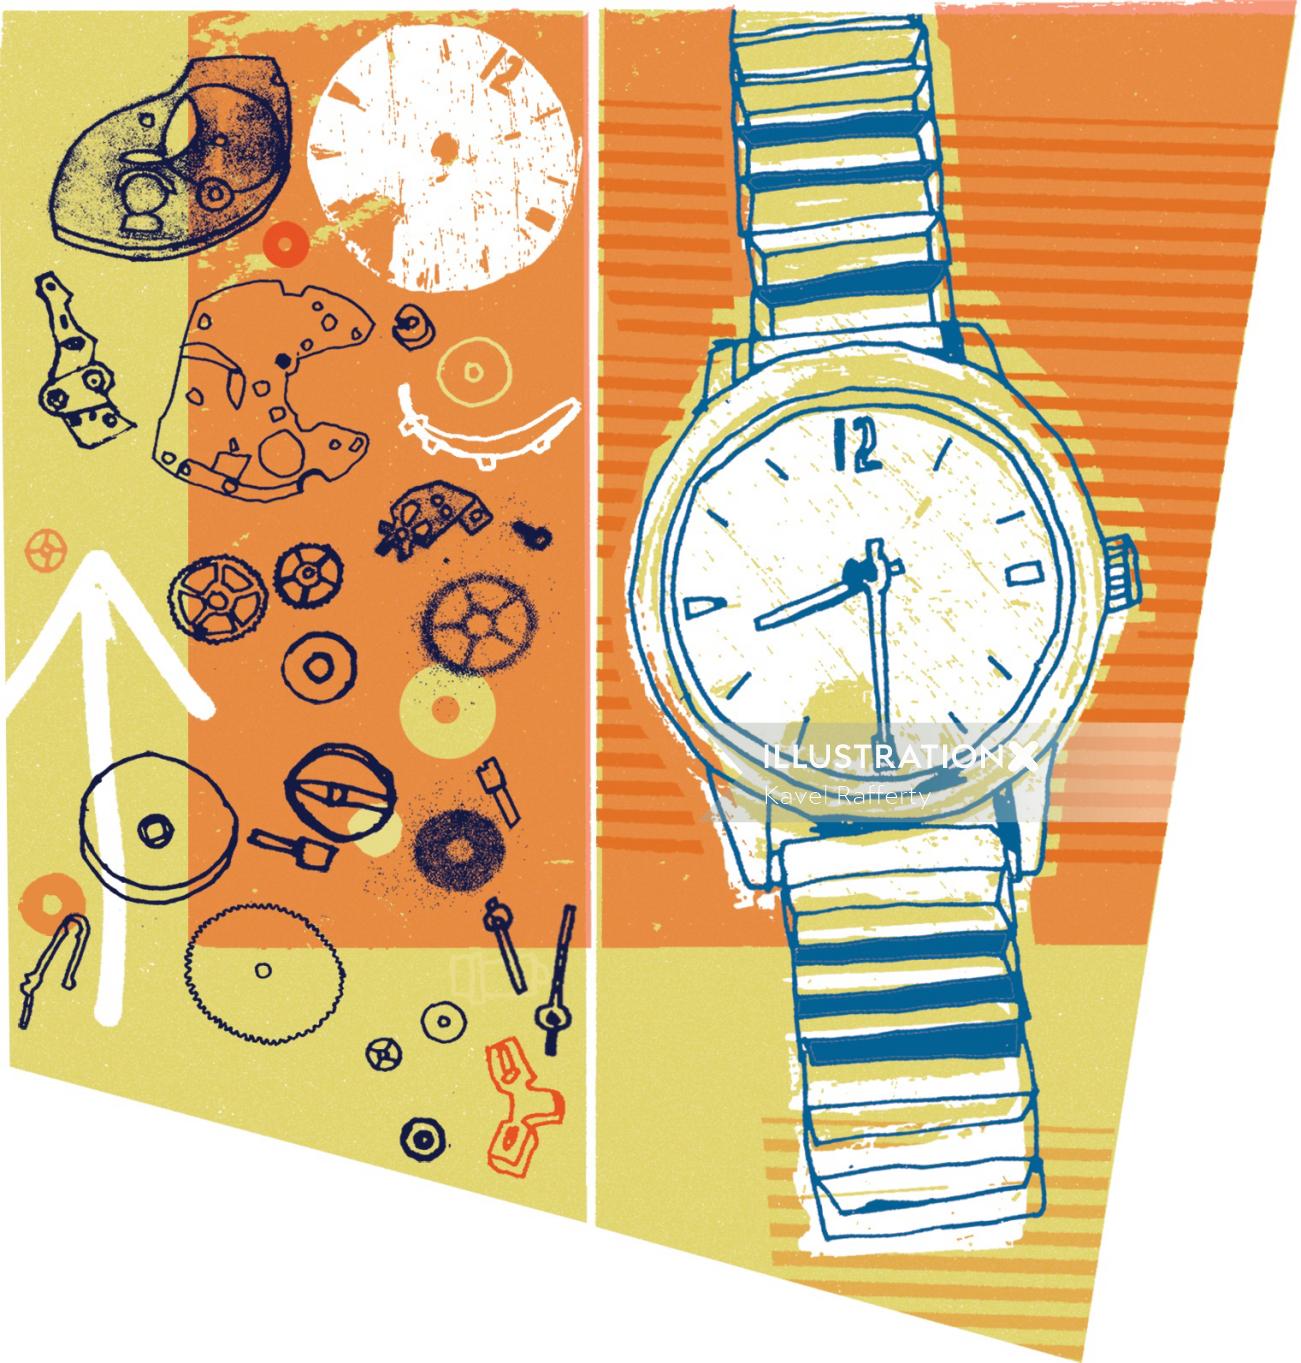 Illustration de la montre par Kavel Rafferty